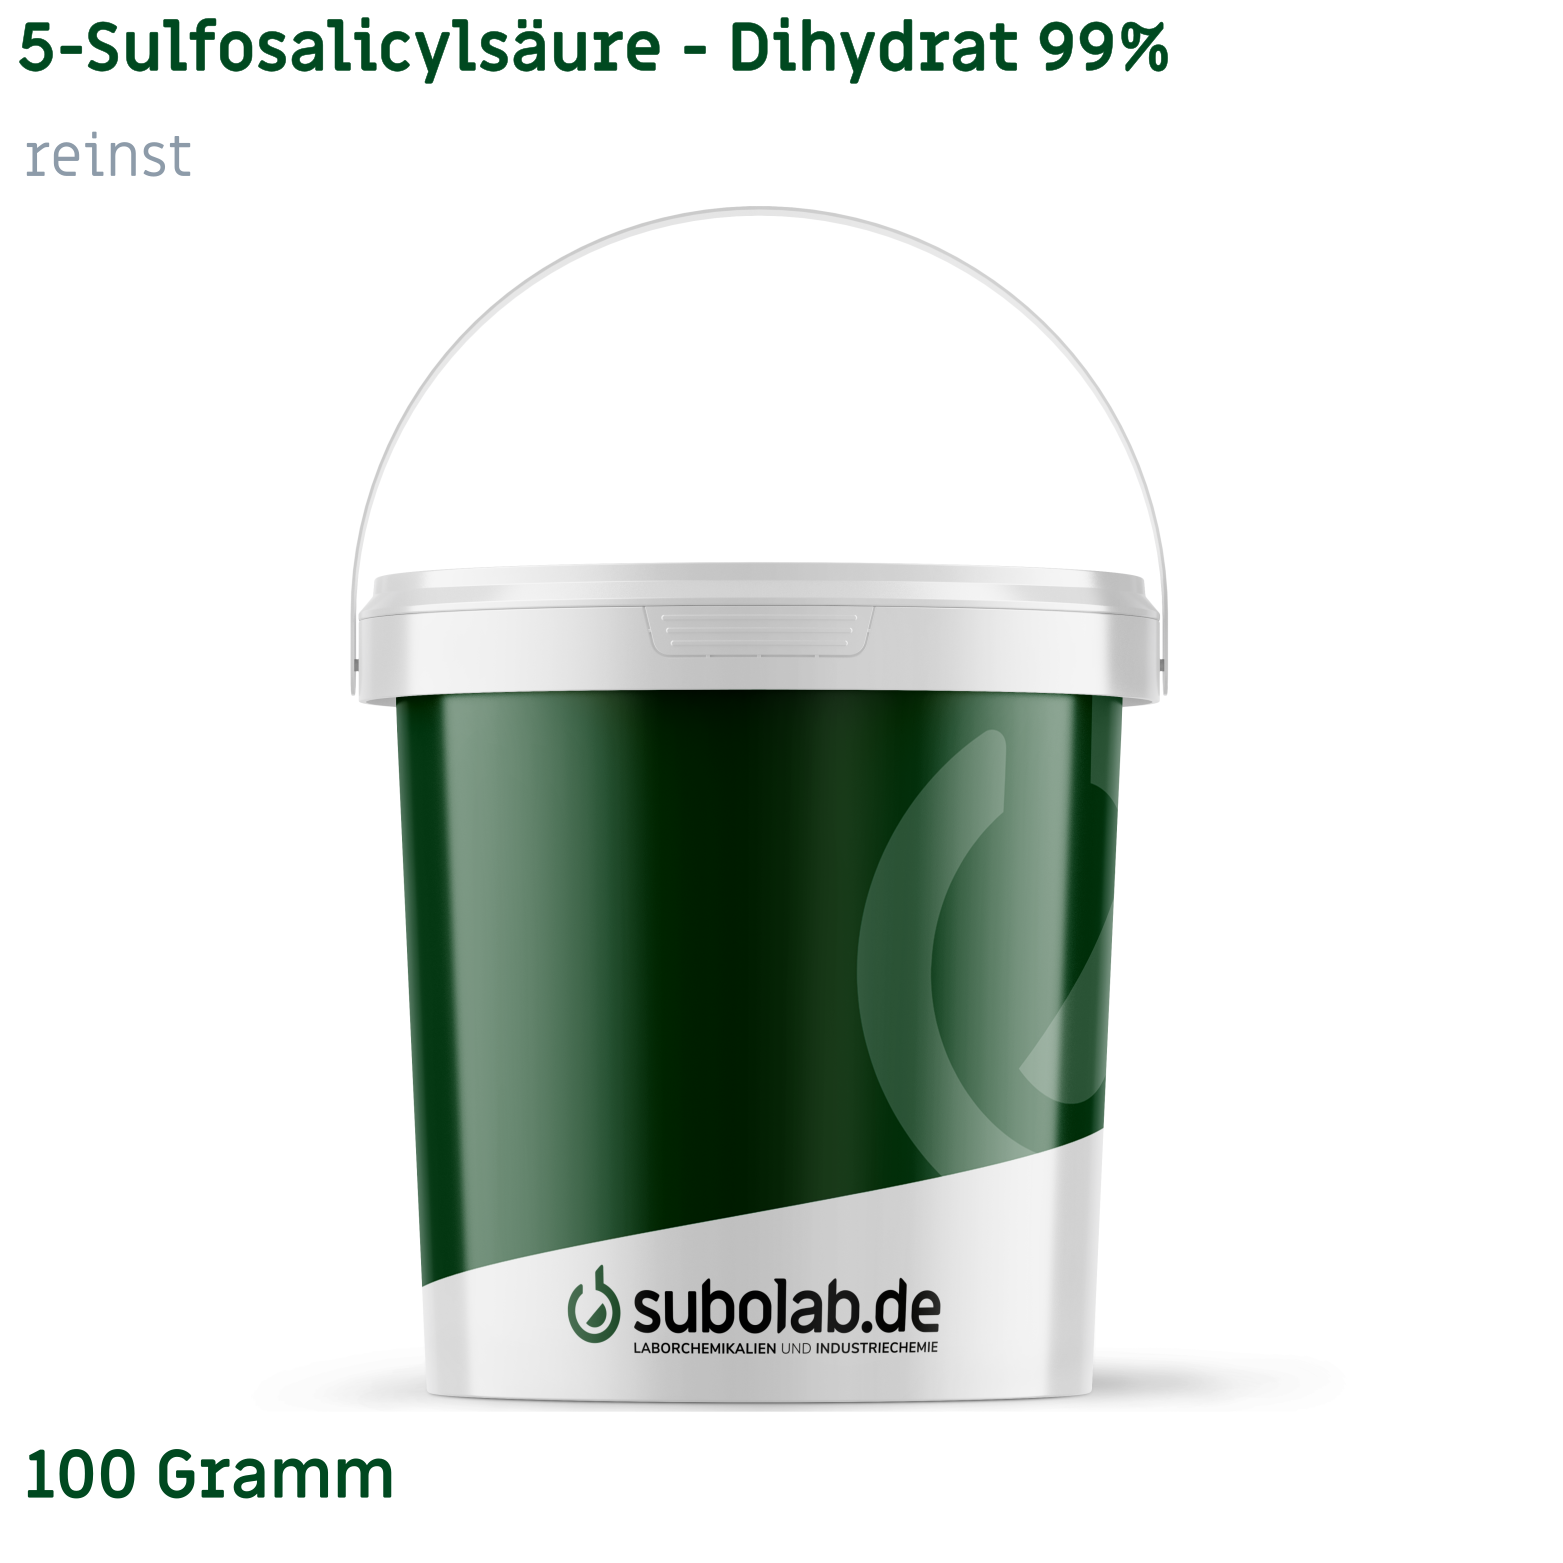 Bild von 5-Sulfosalicylsäure - Dihydrat 99% reinst (100 Gramm)